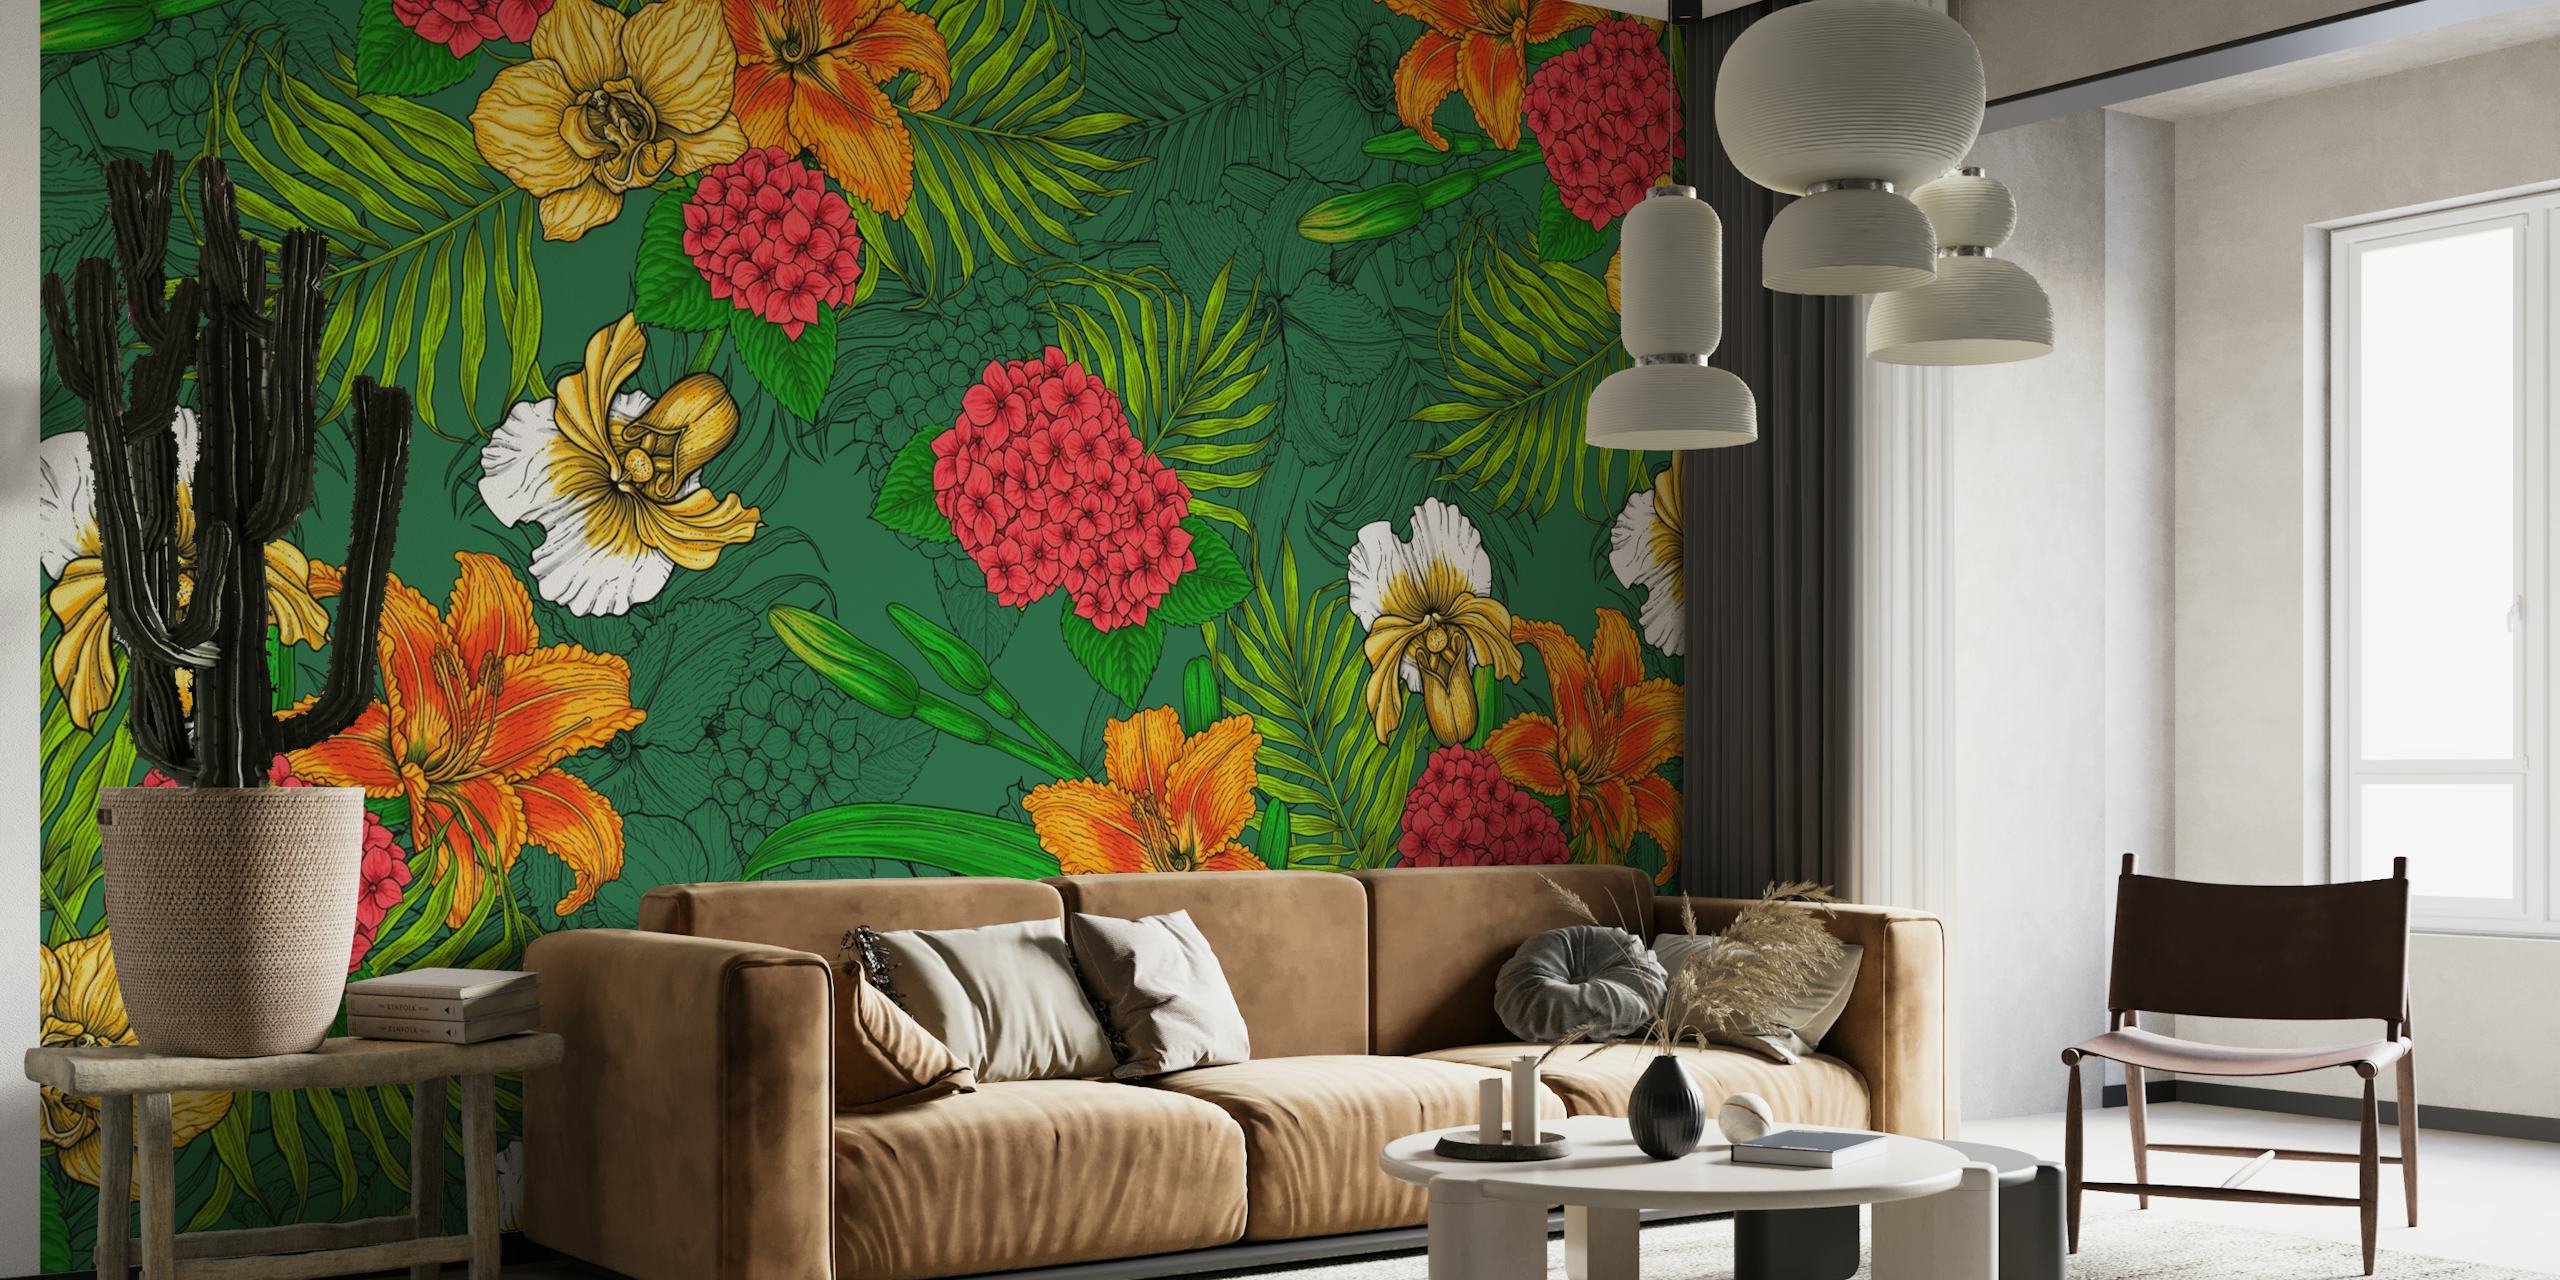 Levendige muurschildering met tropisch bloemenpatroon met oranje en gele bloemen en groen blad.